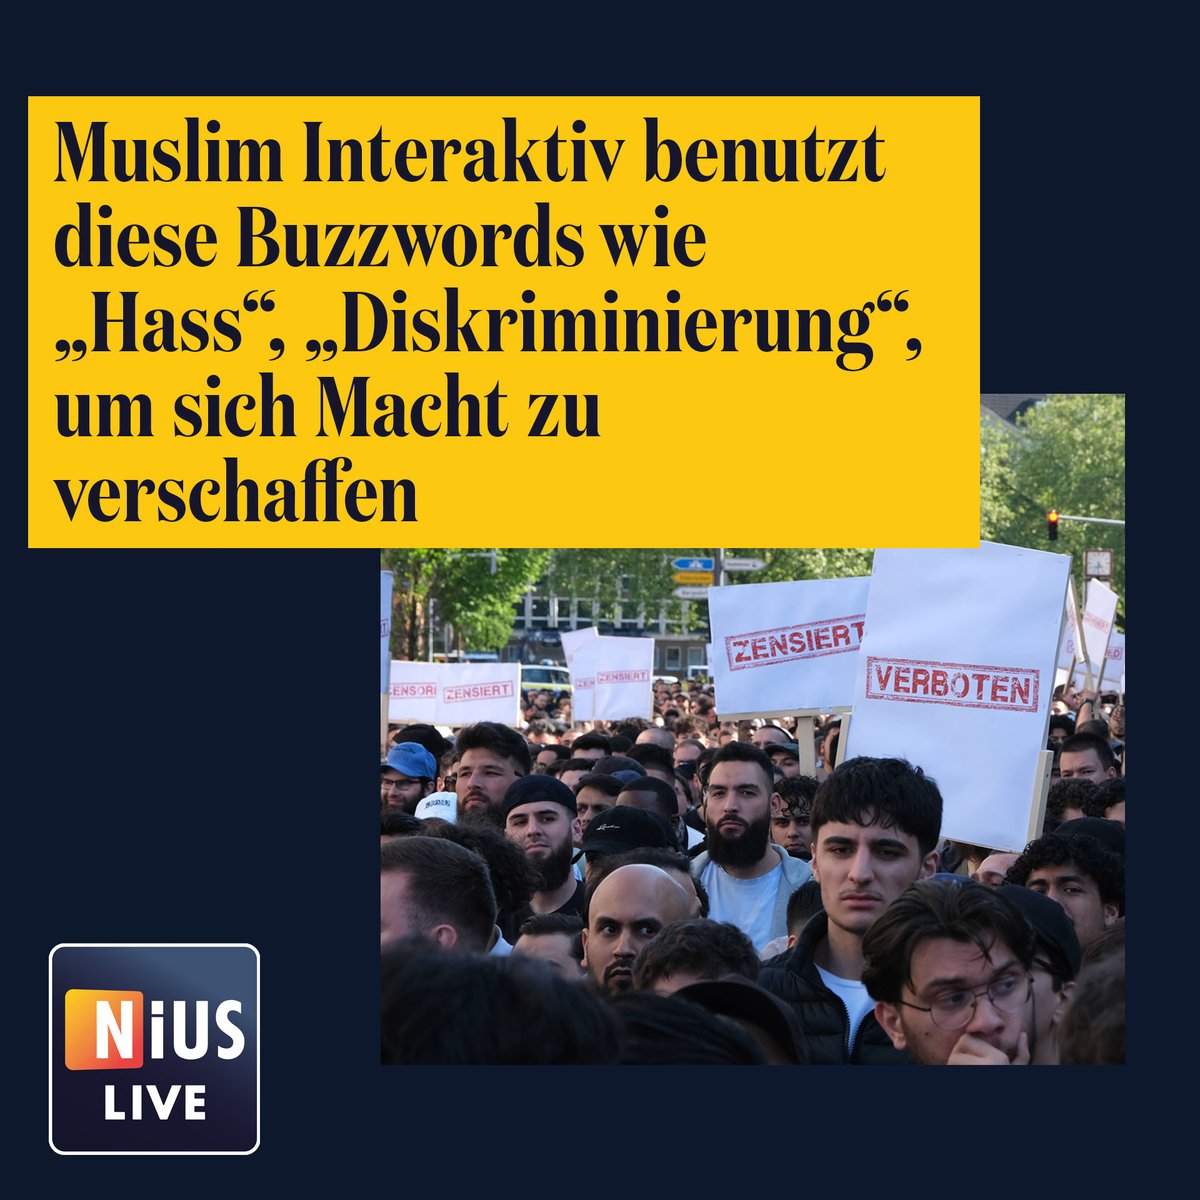 Muslim Interaktiv benutzt diese Buzzwords wie „Hass“, „Diskriminierung“, um sich Macht zu verschaffen